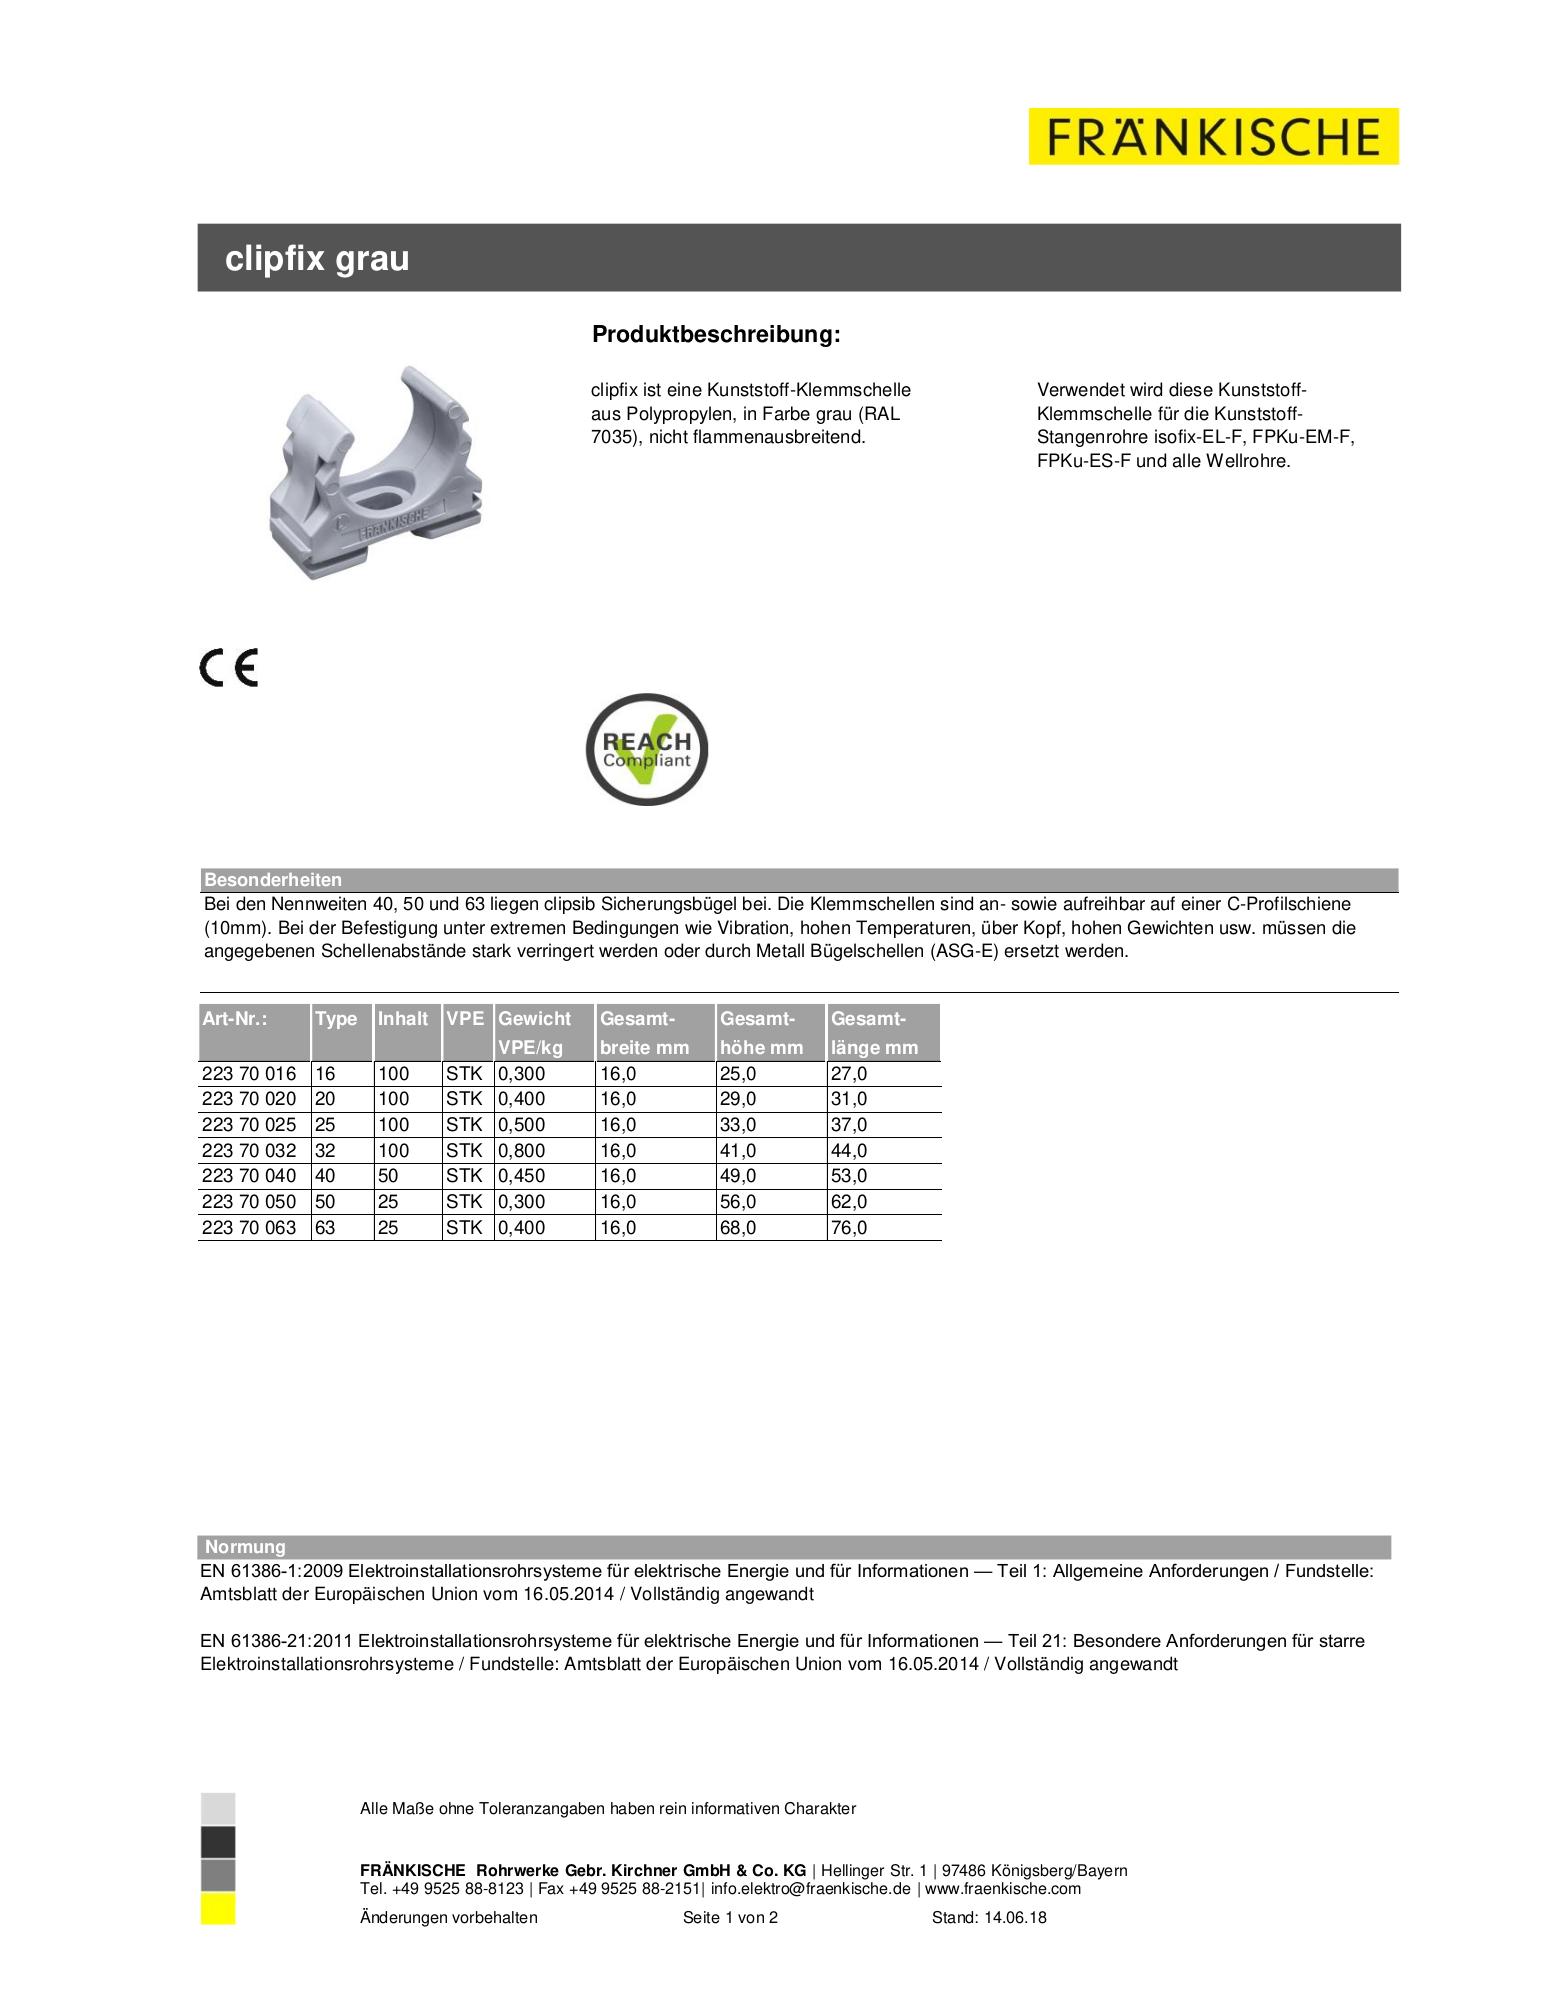 Produktdatenblatt clipfix grau